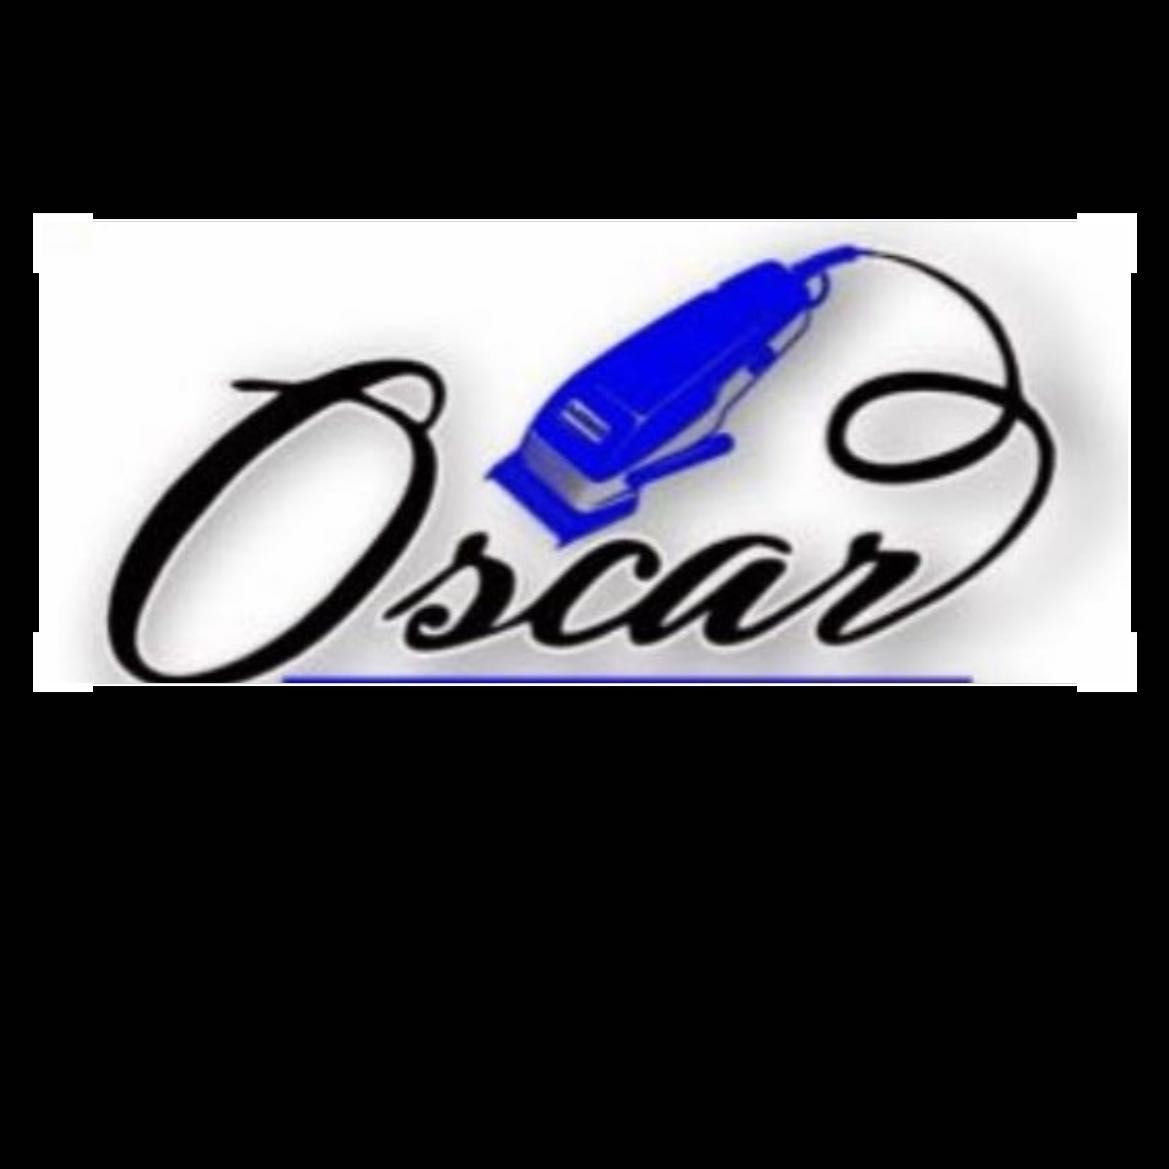 Oscar Barbershop, 95 Union St, Lynn, 01902